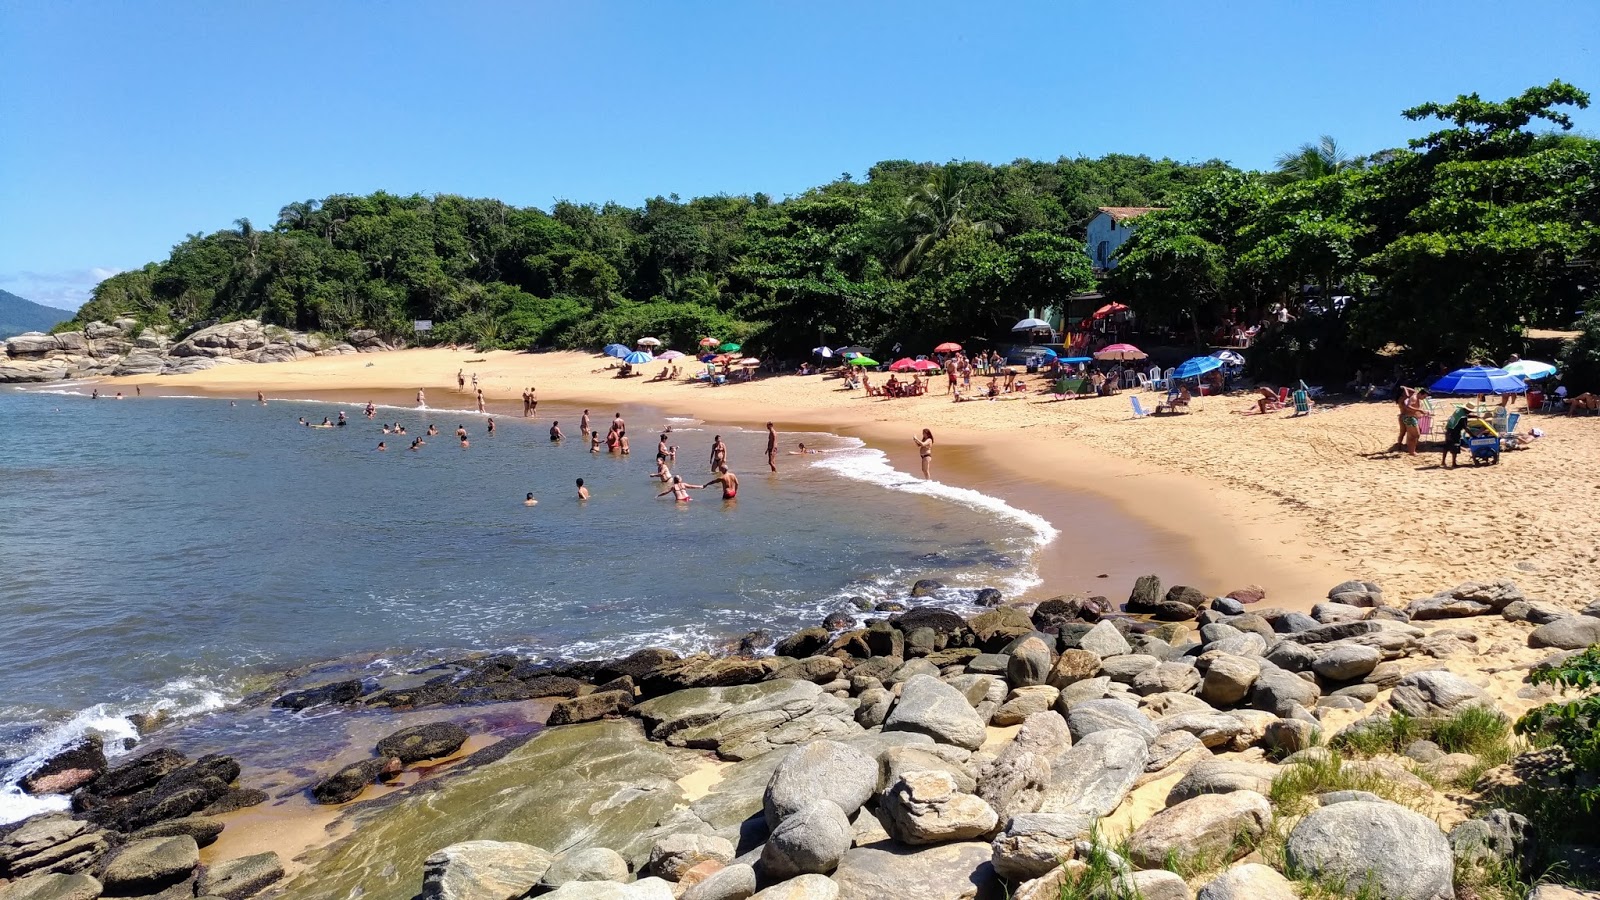 Joana Plajı'in fotoğrafı parlak kum yüzey ile